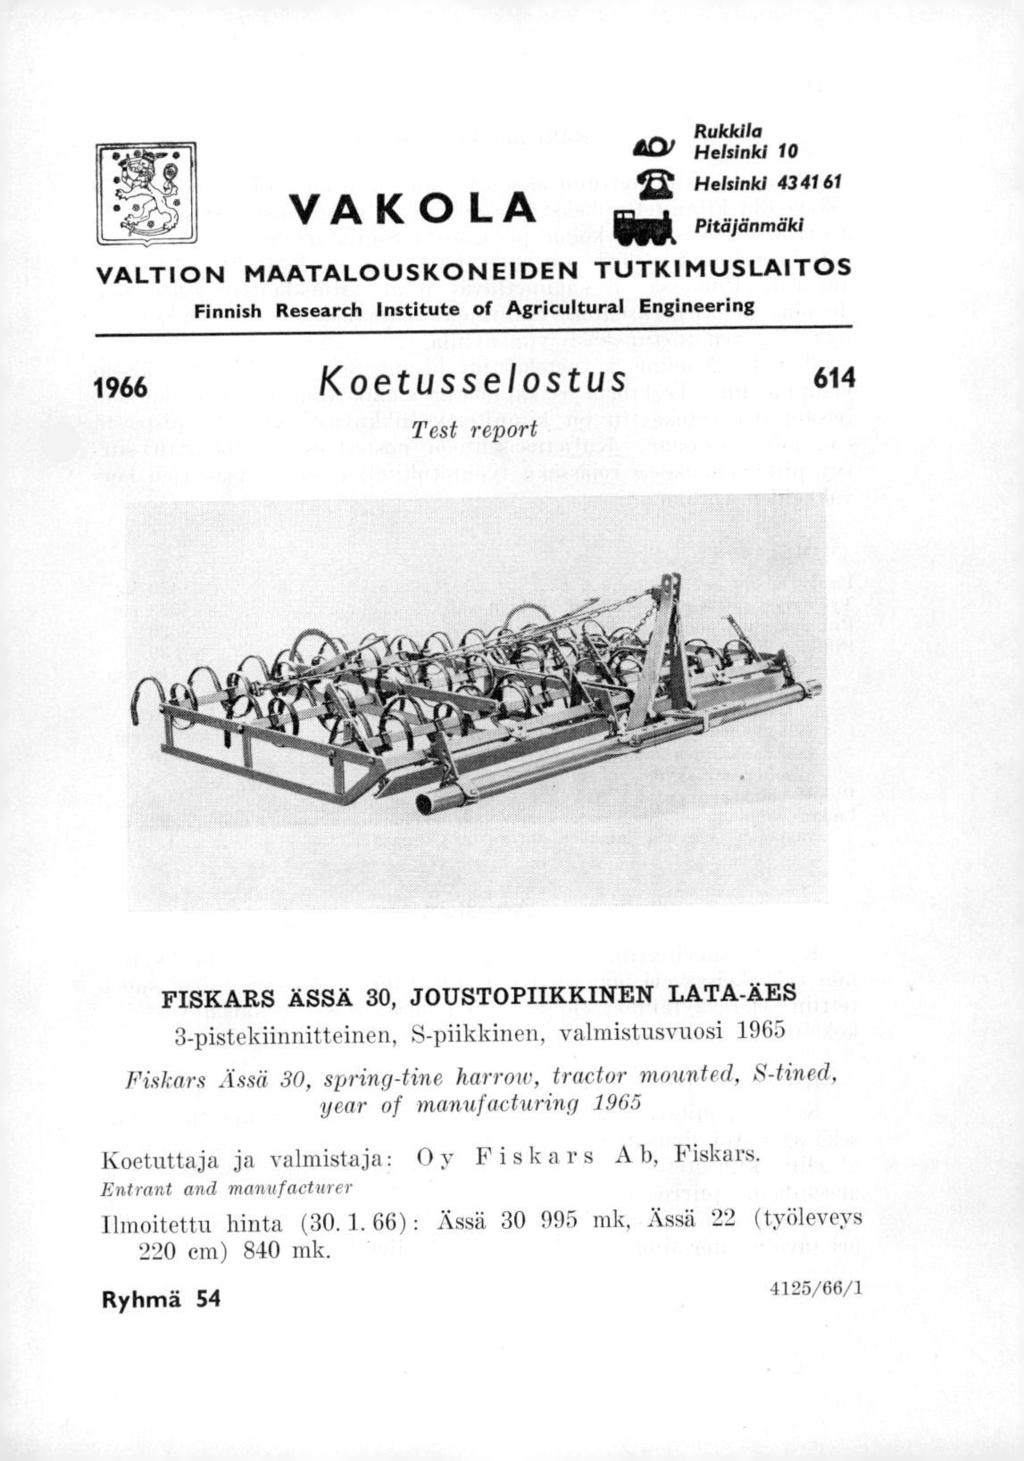 VAKOLA Rukkila 01 Helsinki 10 Helsinki 43 41 61 ieek Pitäjänmäki VALTION MAATALOUSKONEIDEN TUTKIMUSLAITOS Finnish Research Institute of Agricultural Engineering 1966 Koetusselostus 614 Test report